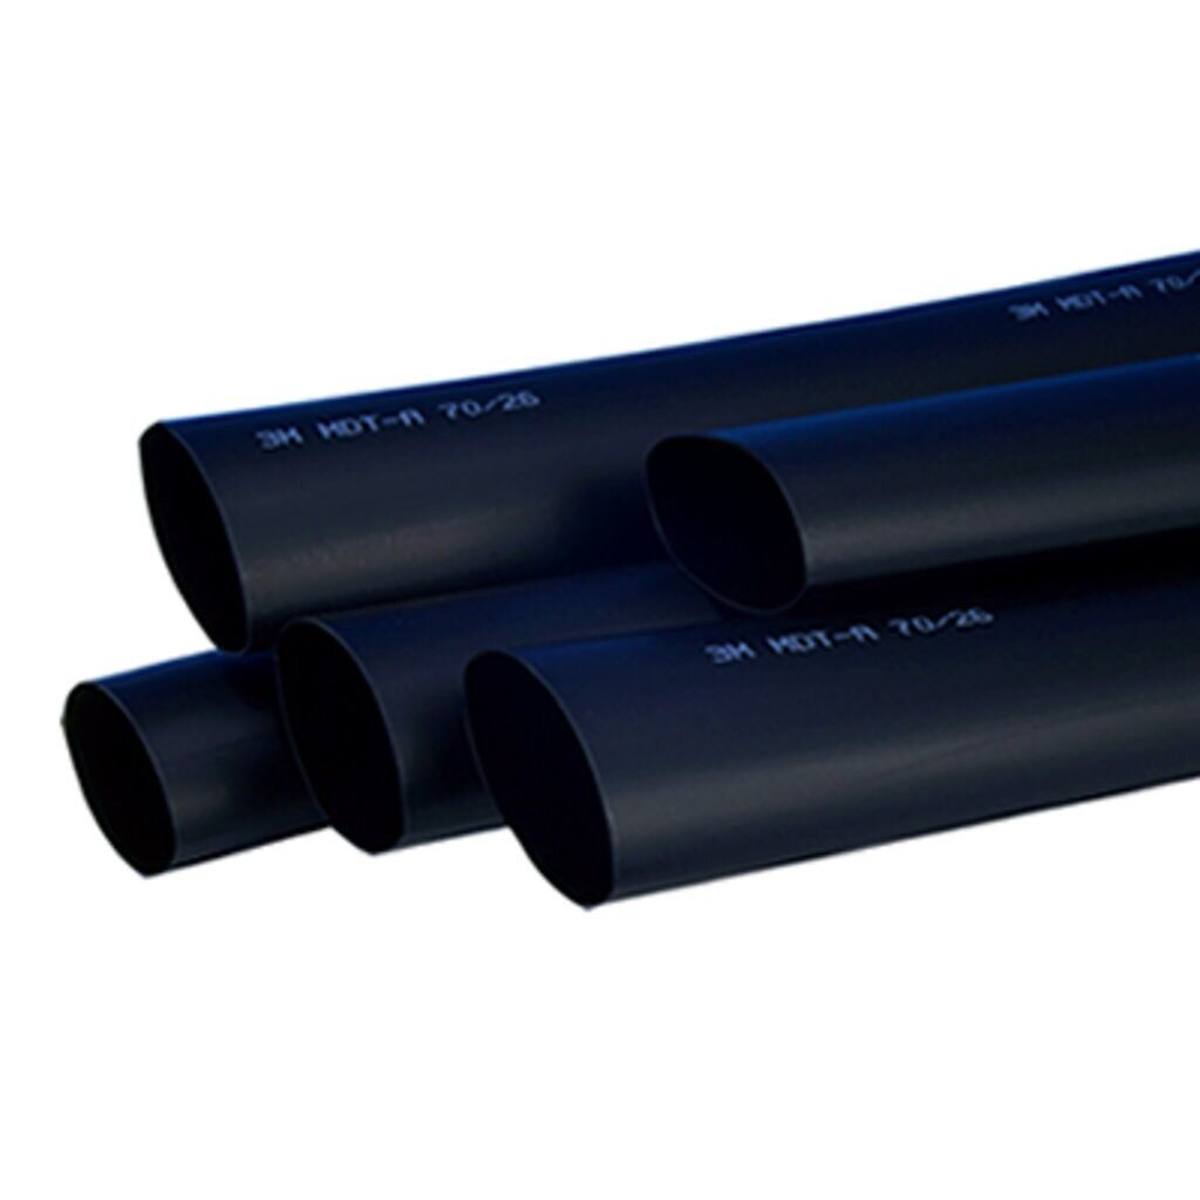  3M HDT-A Paksuseinäinen lämpökutisteputki liimalla, musta, 48/15 mm, 1 m